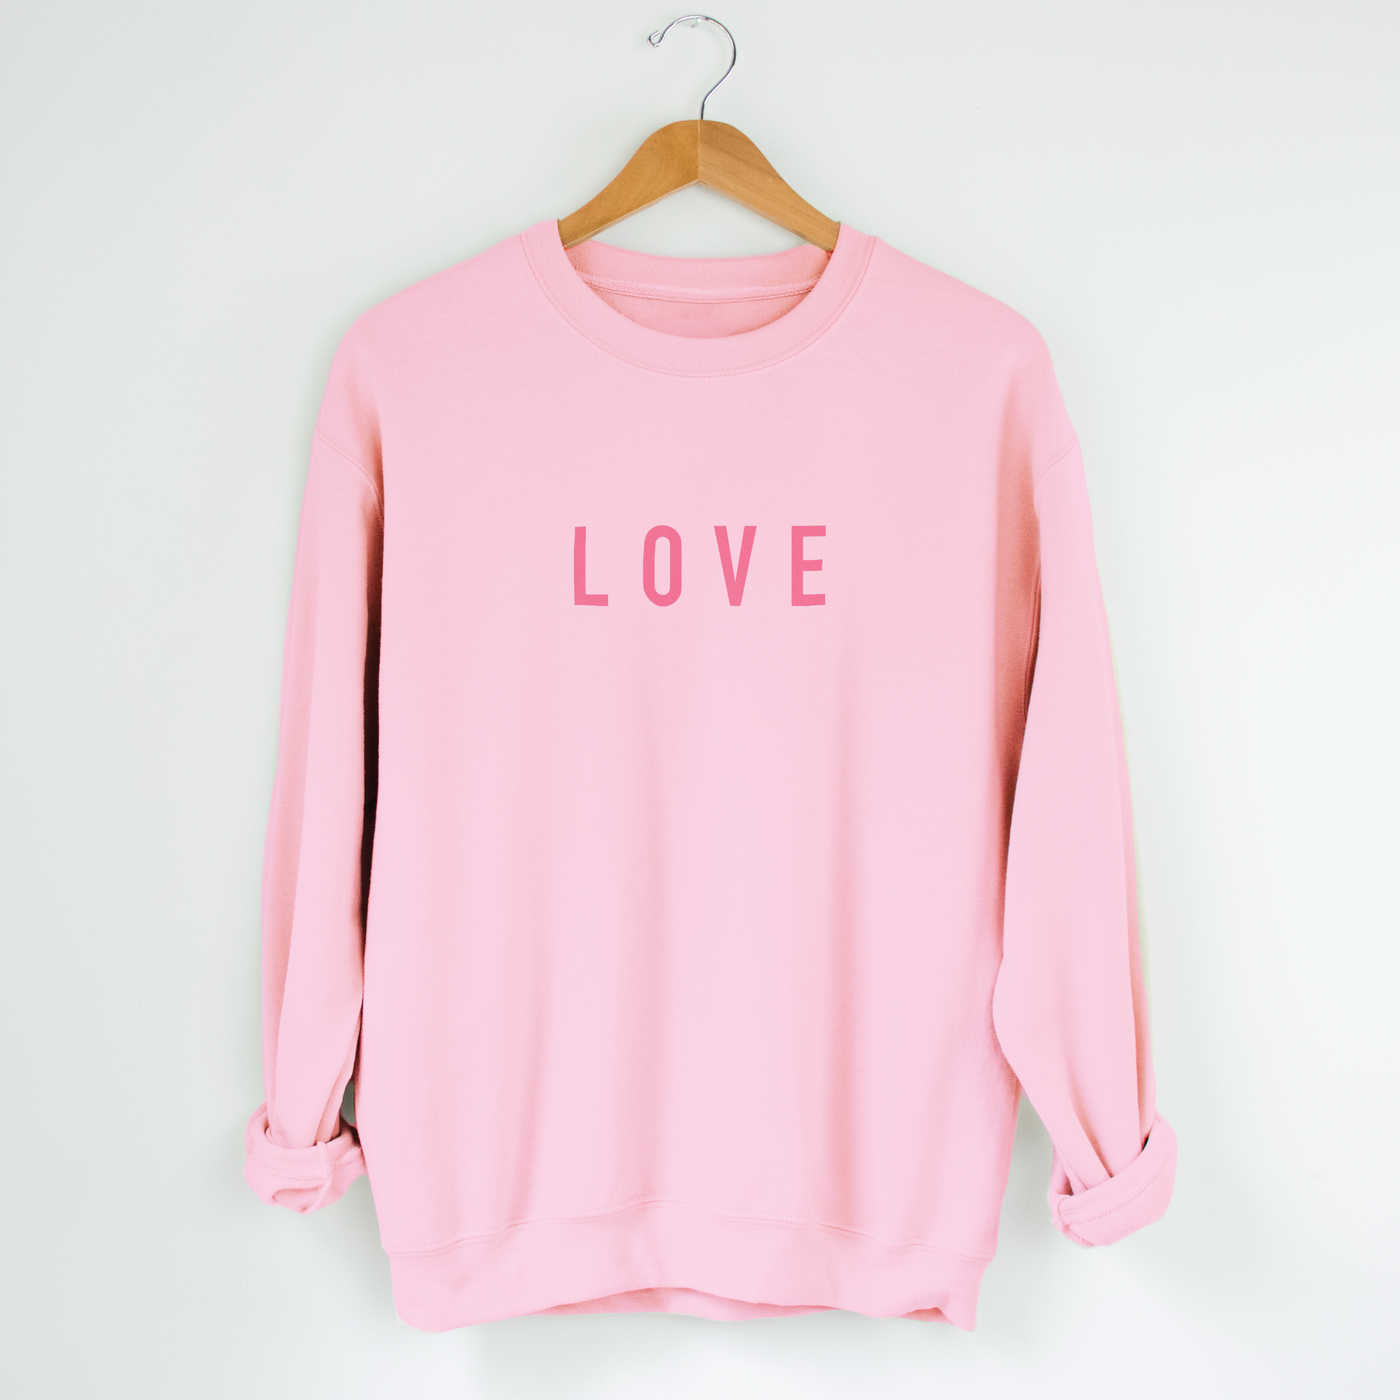 Pink 'Love' Valentine's Day Sweatshirt